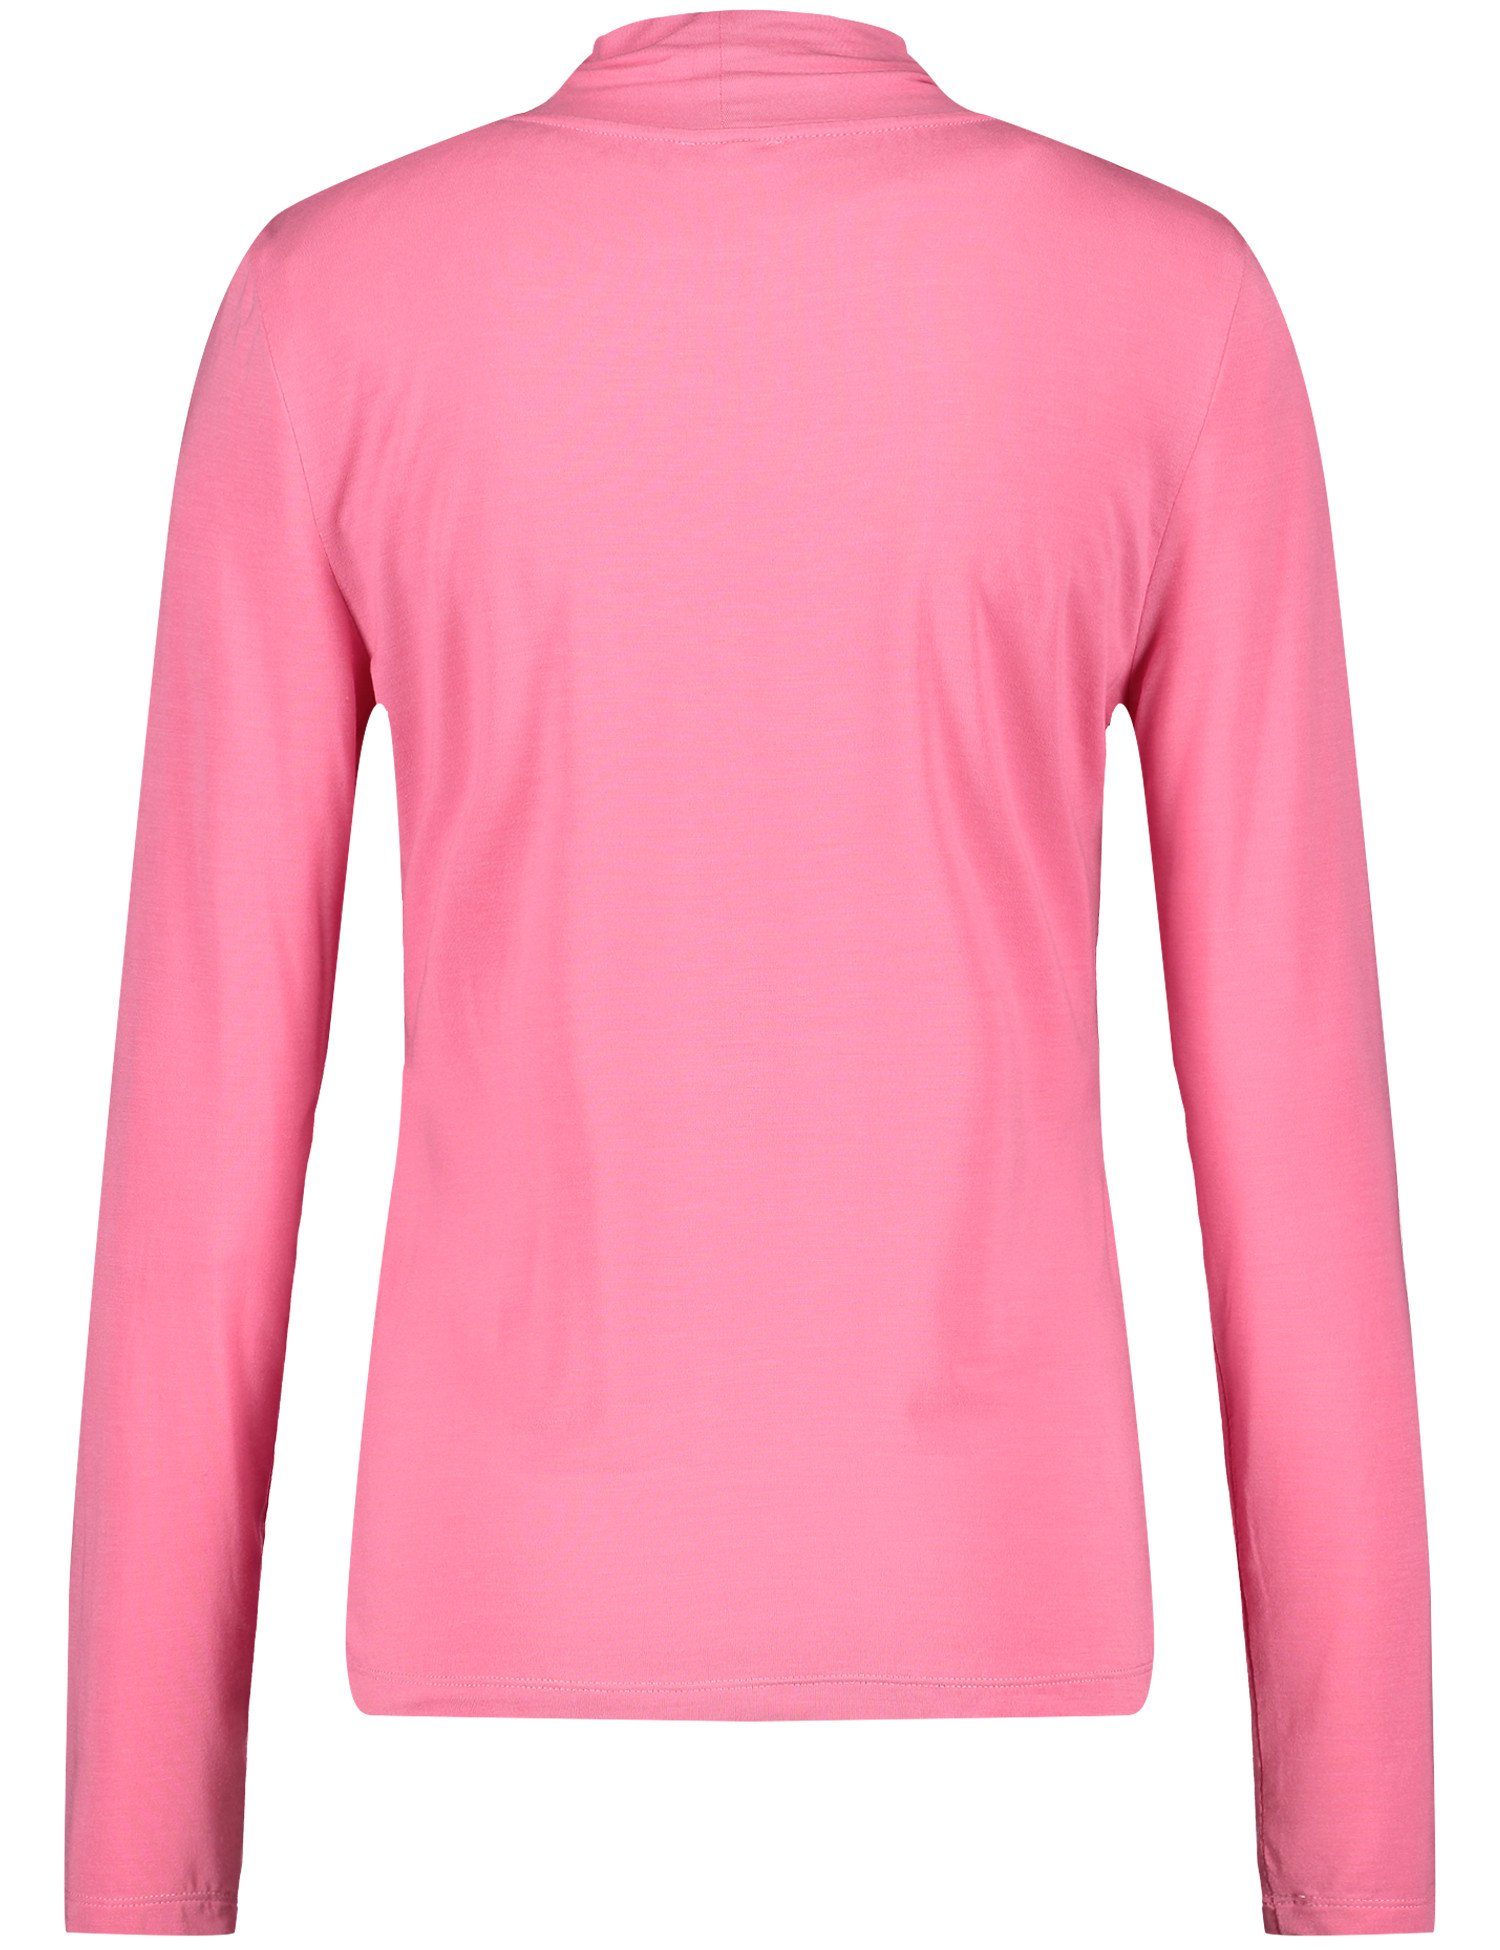 WEBER ROSE 30894 GERRY T-Shirt PINK